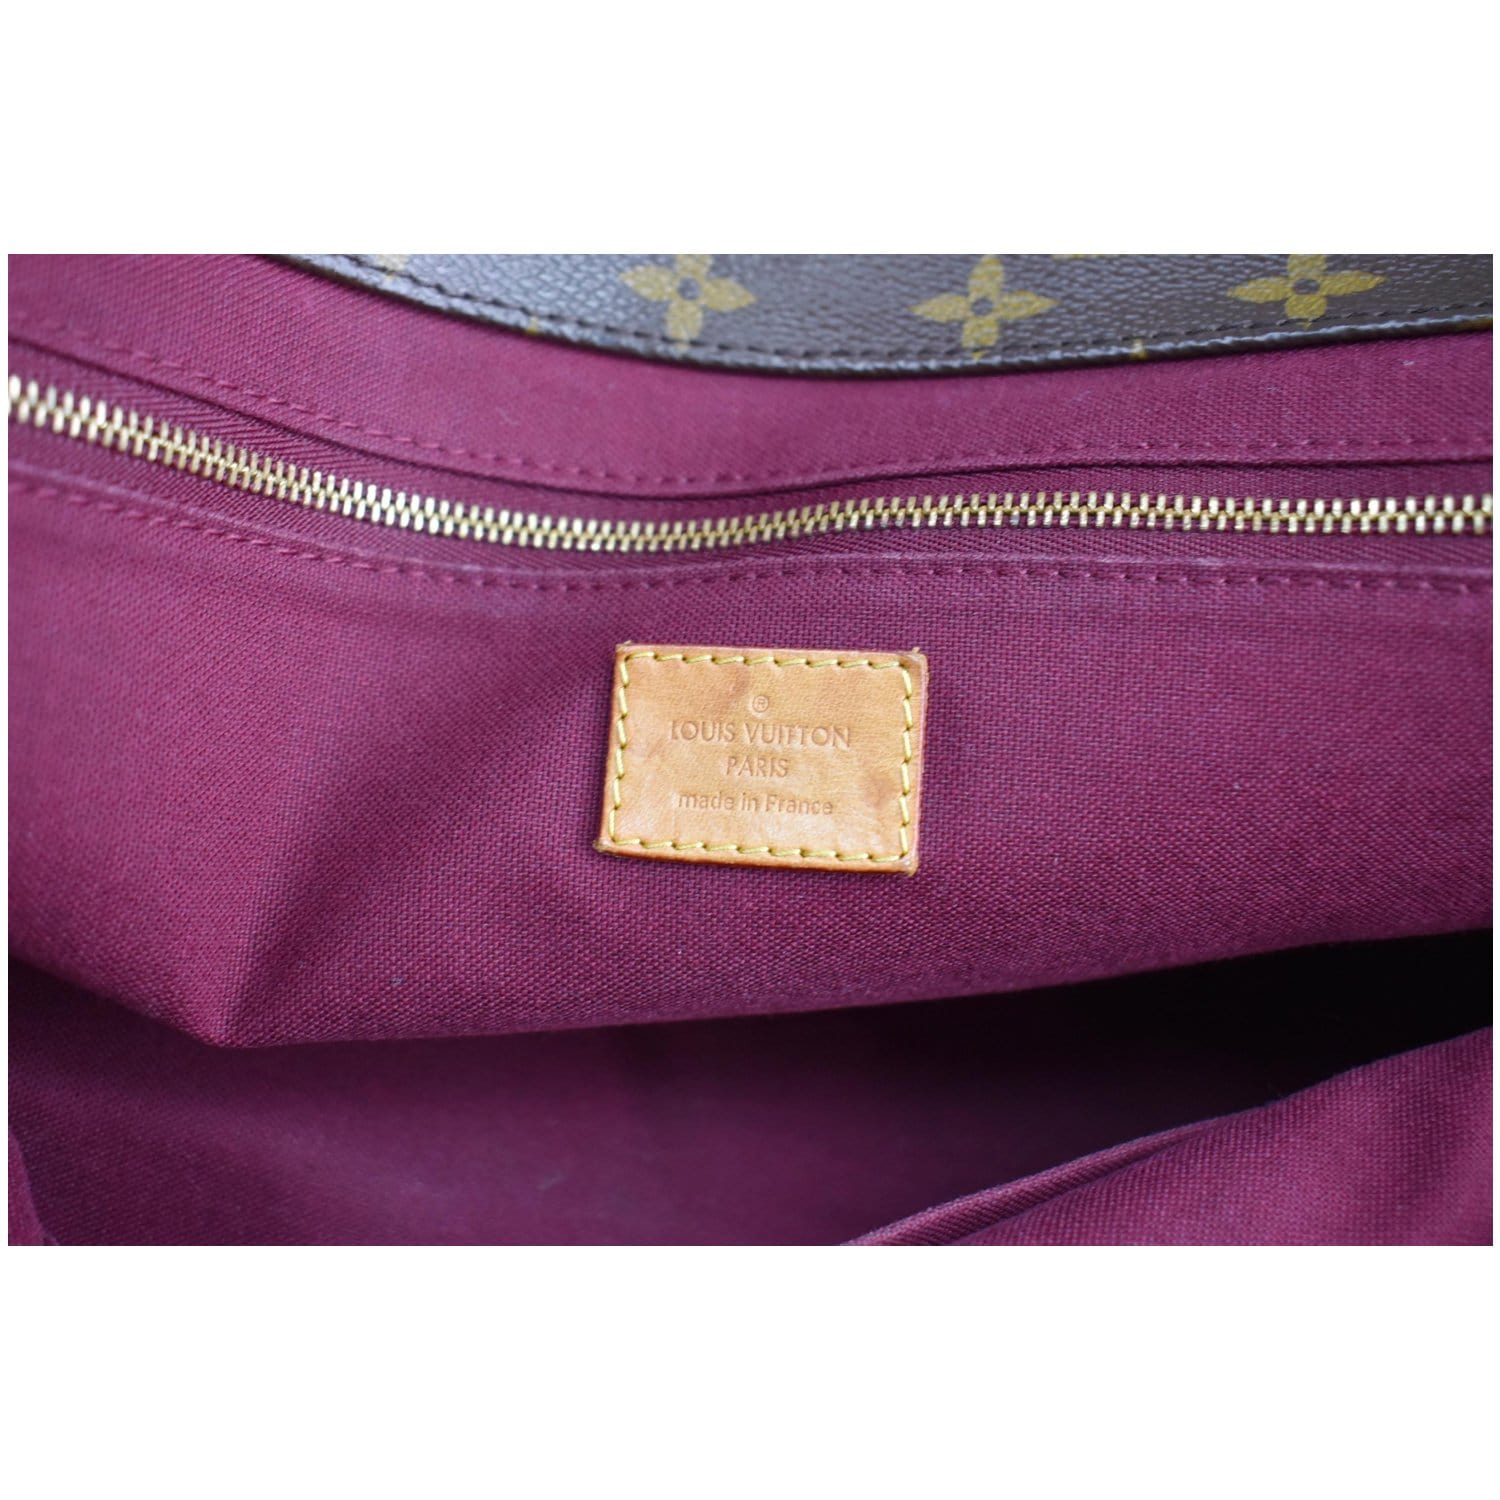 Raspail cloth tote Louis Vuitton Brown in Cloth - 17927127